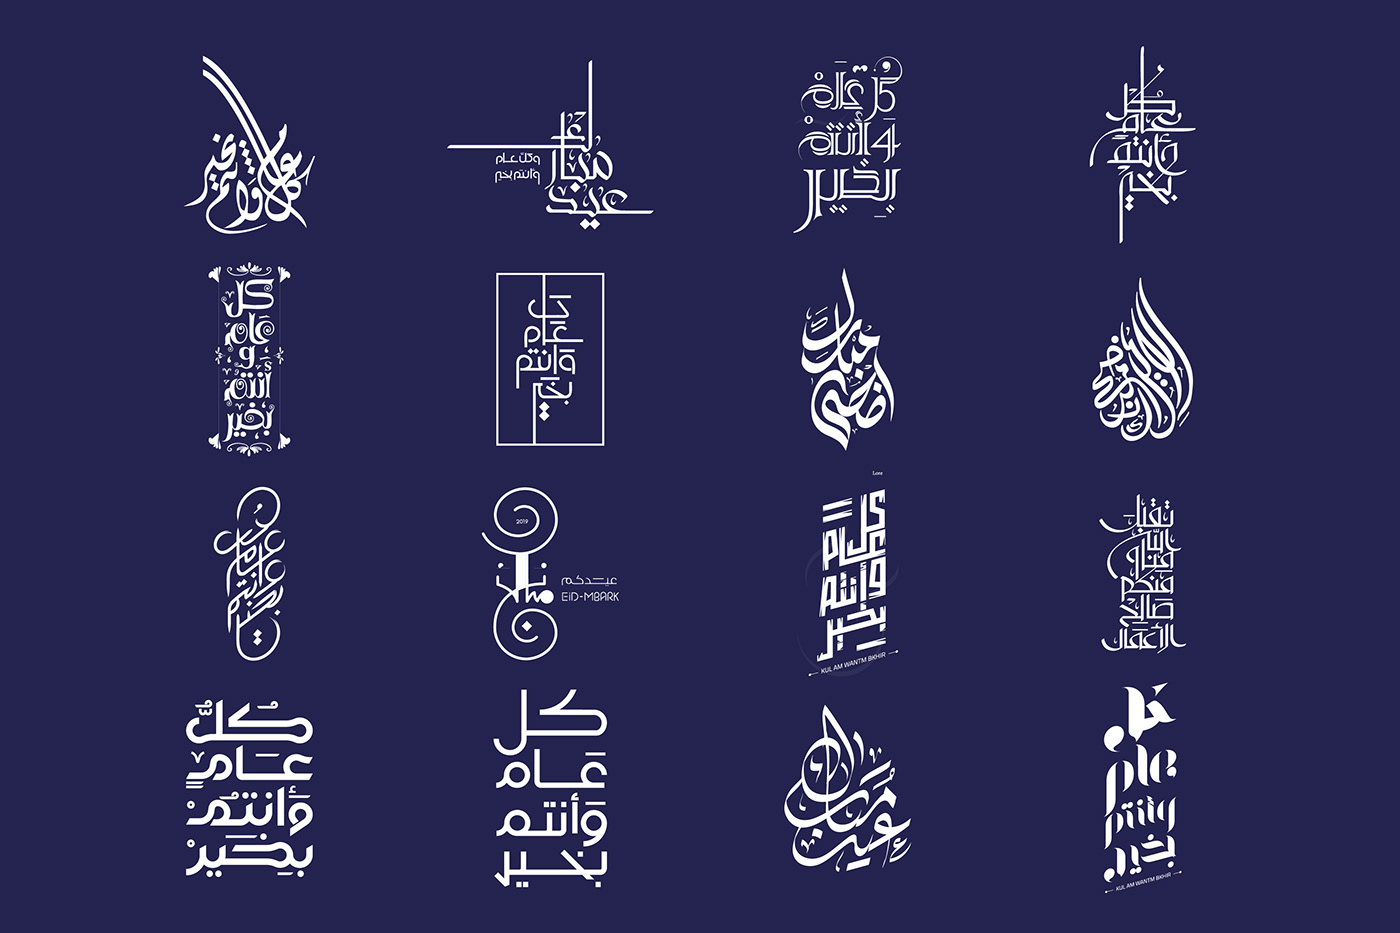 카지노솔루션 خط عربي typography   Advertising  Calligraphy   에볼루션알 Eid islamic eid mubarak